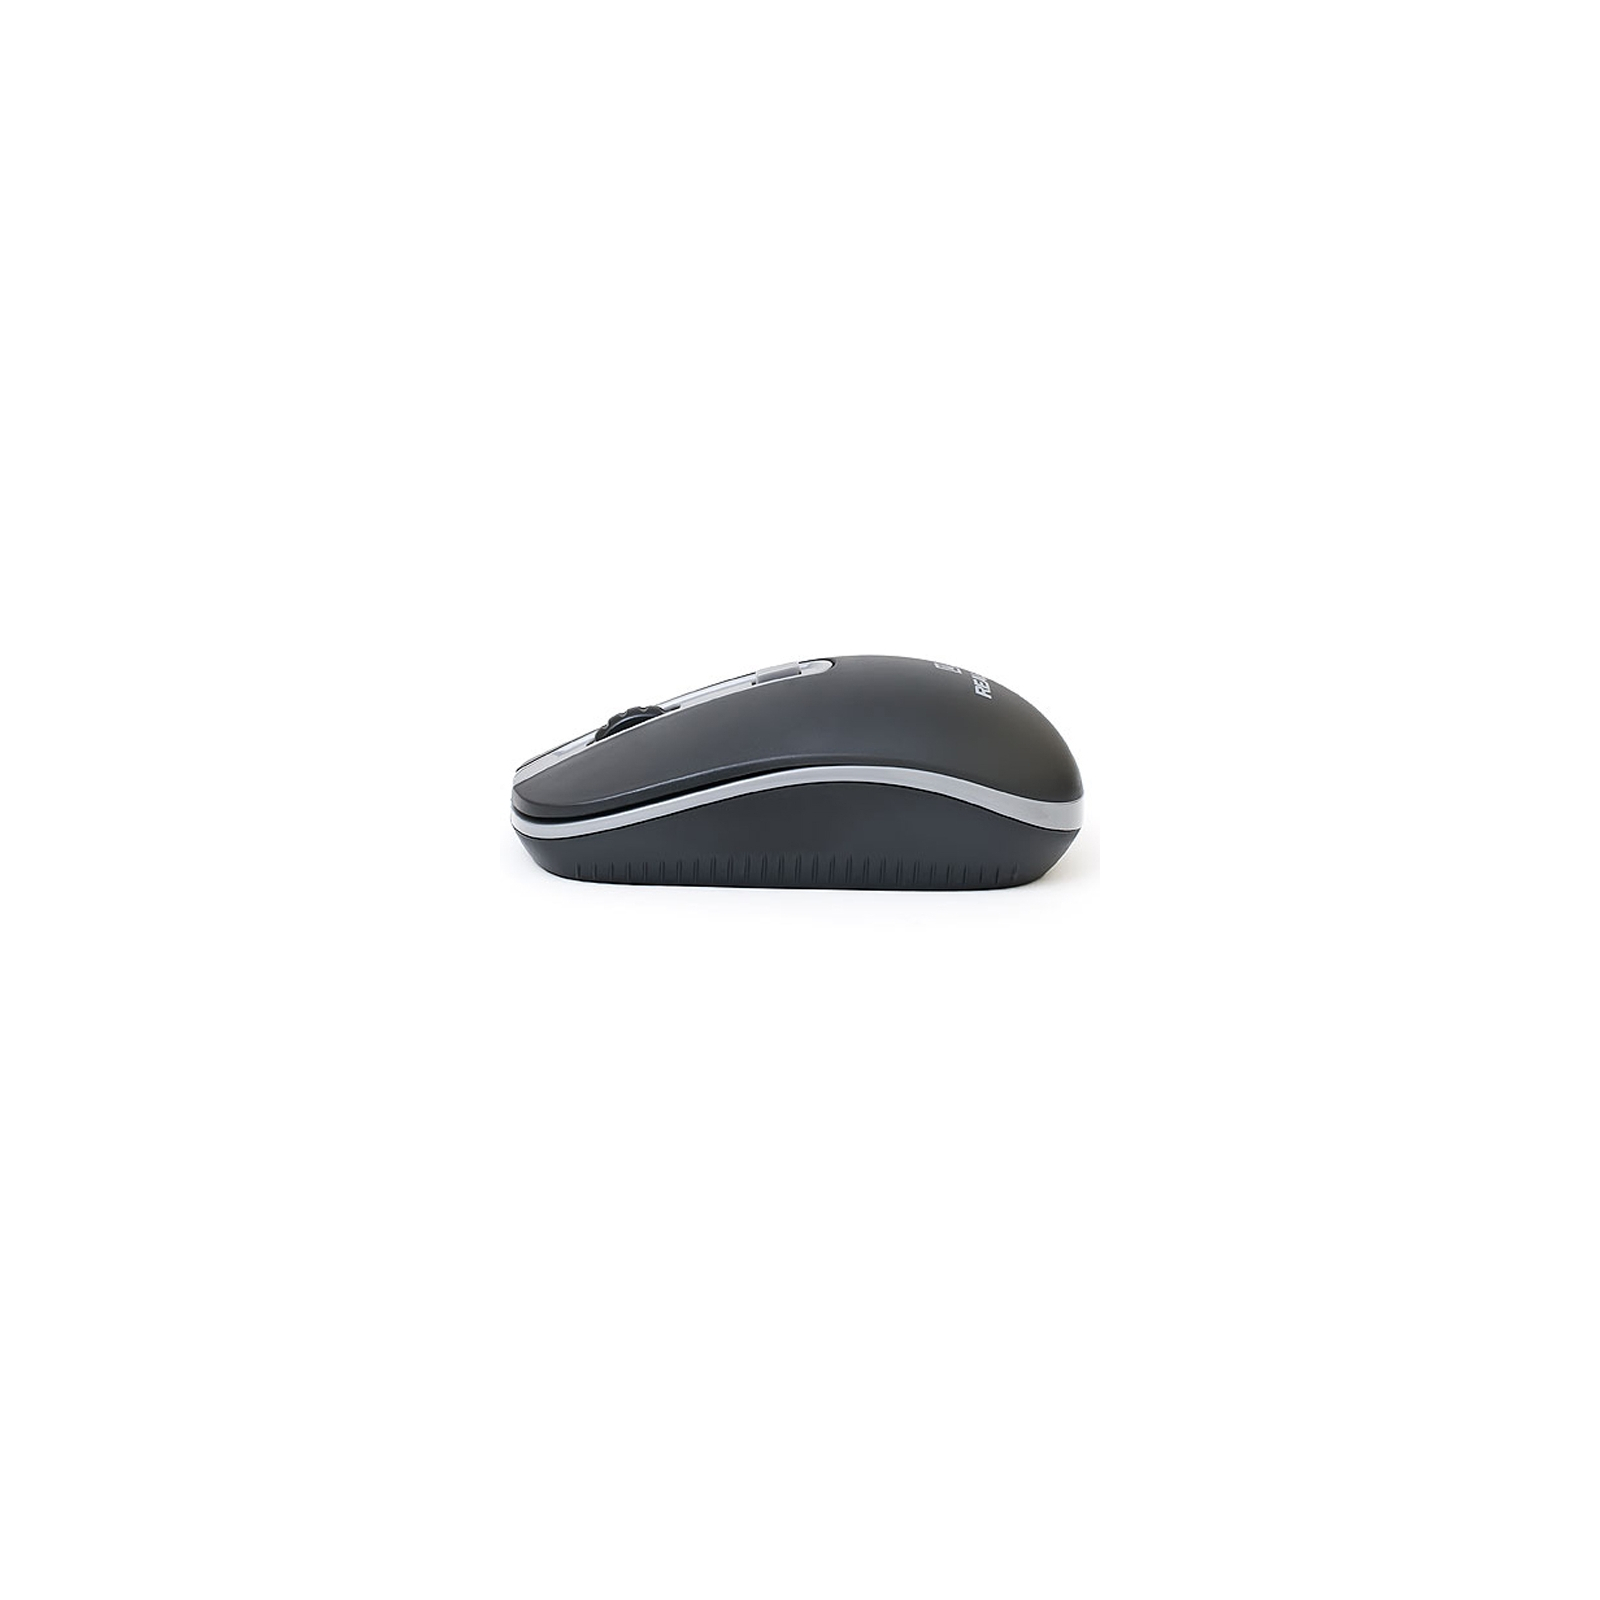 Мышка REAL-EL RM-303 black-grey изображение 4